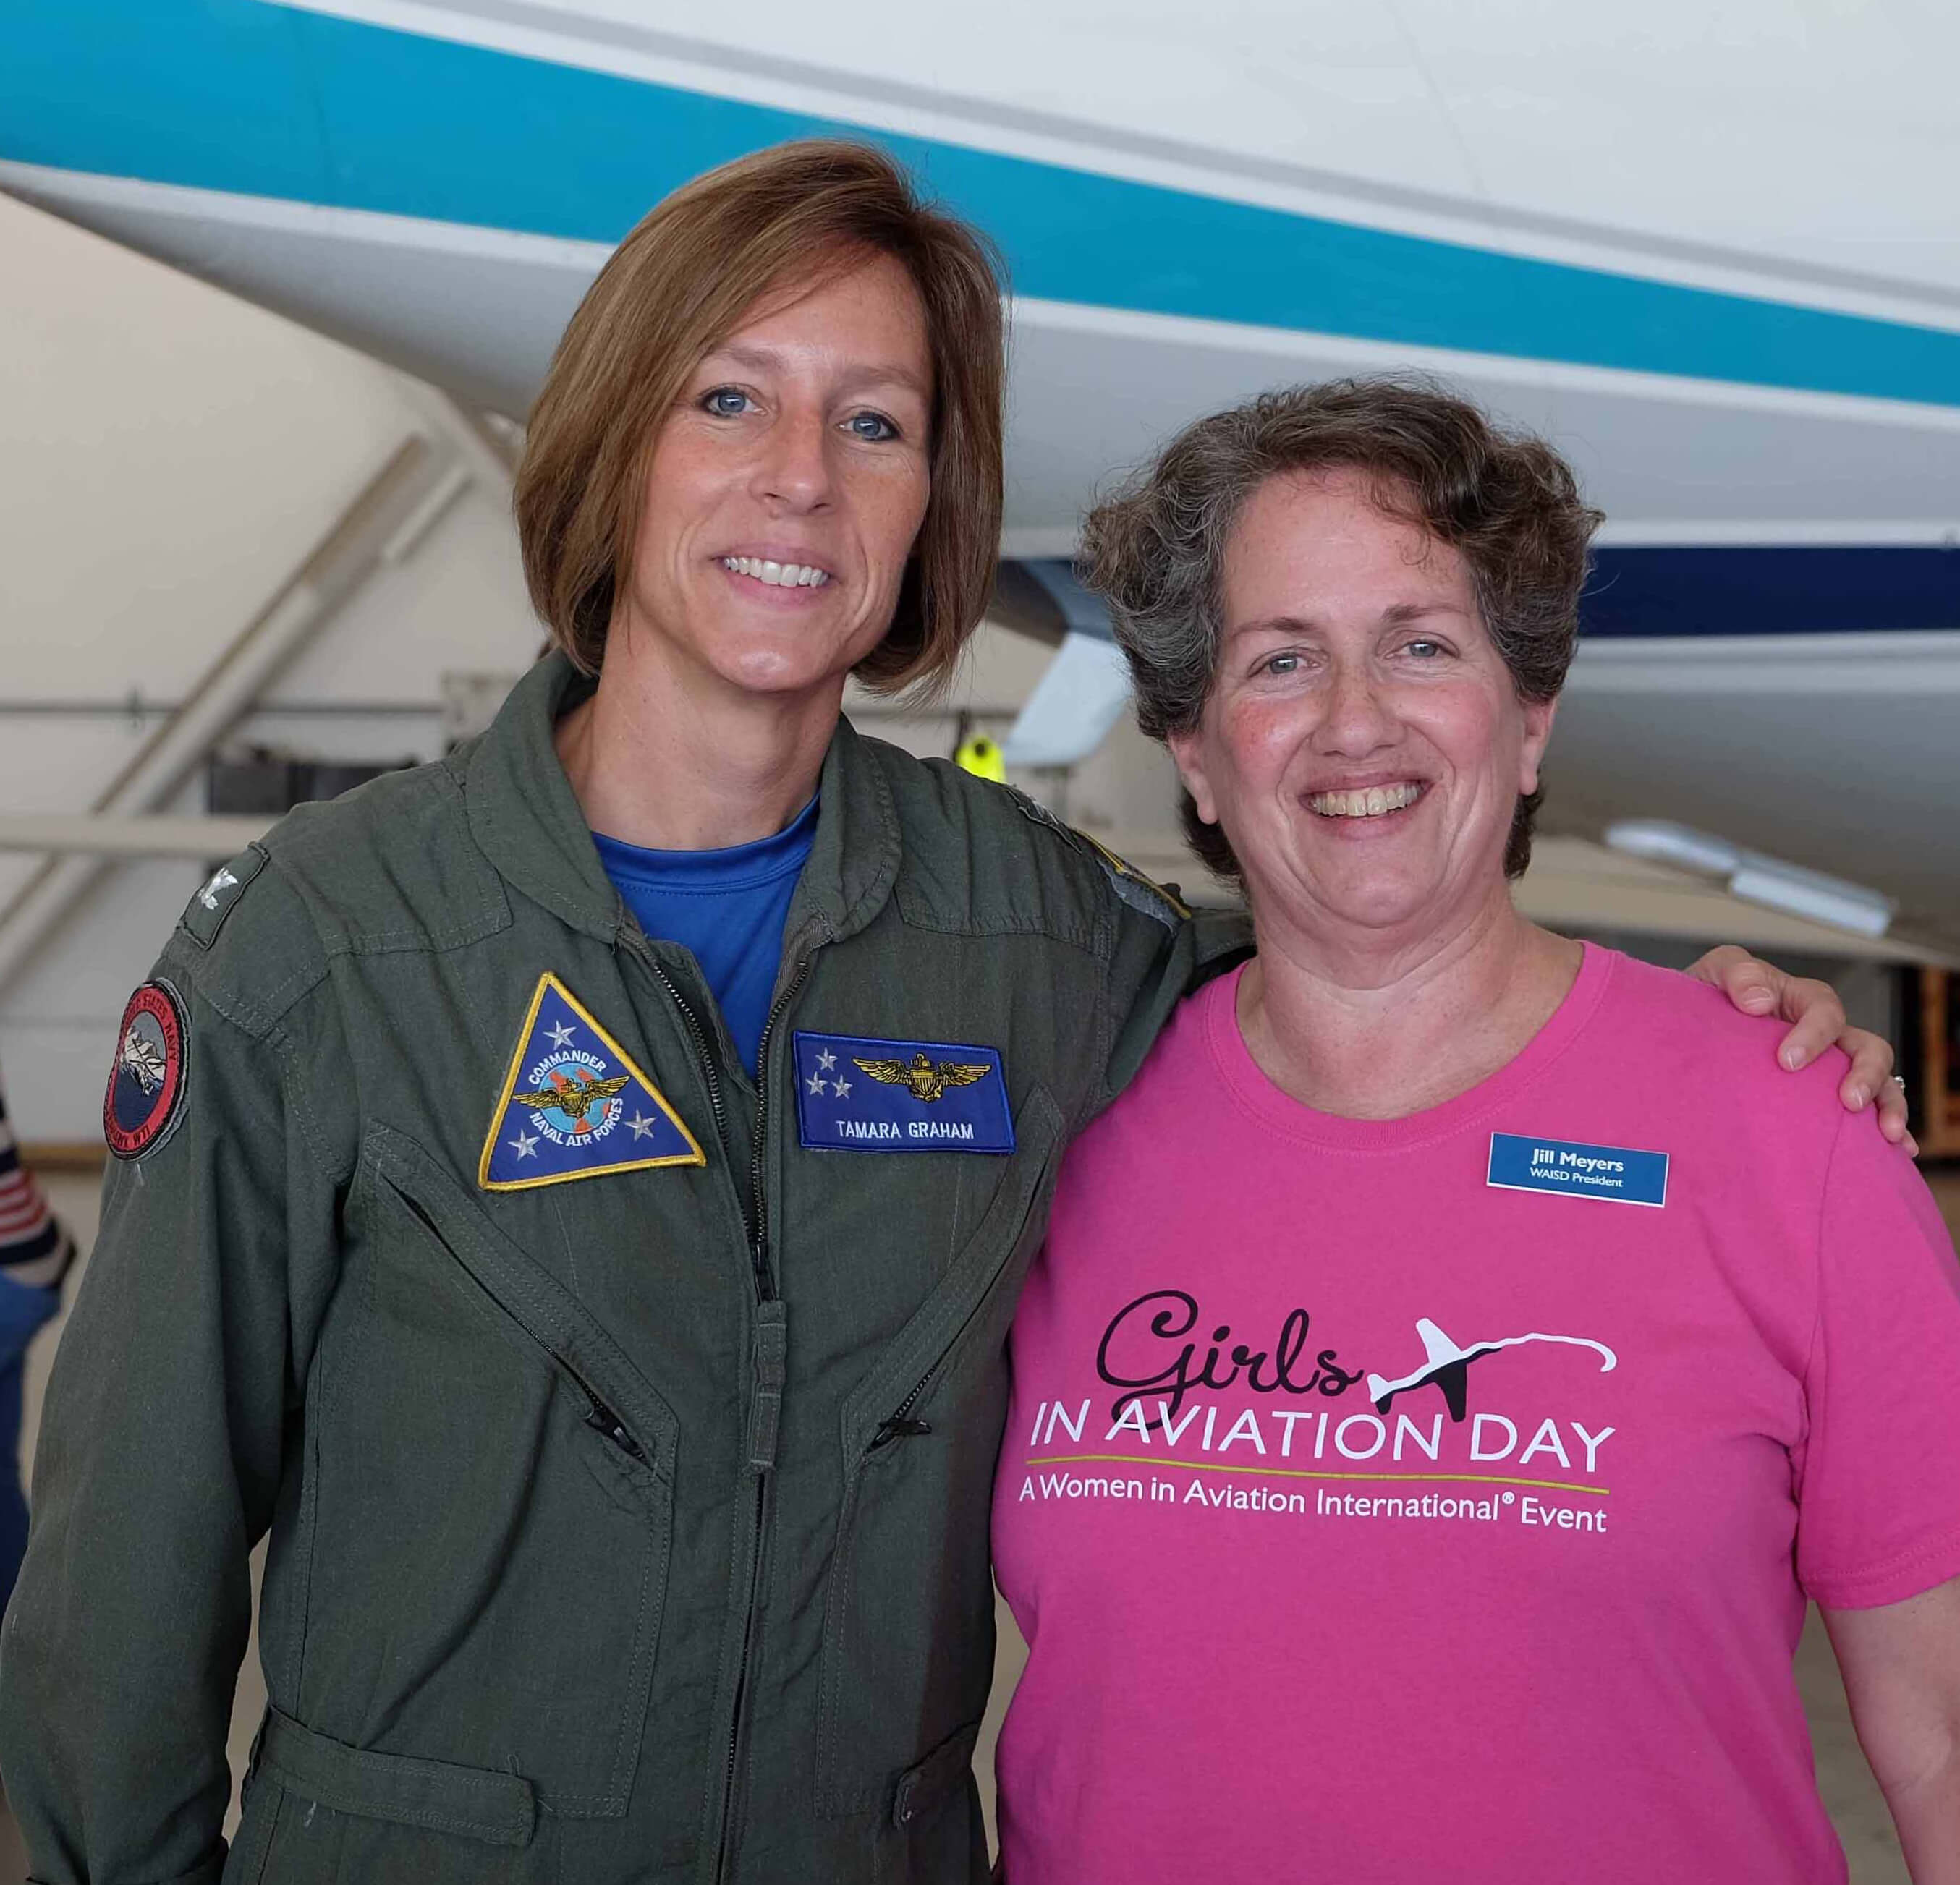 Jill Meyers, Girls in Aviation Day, 2015